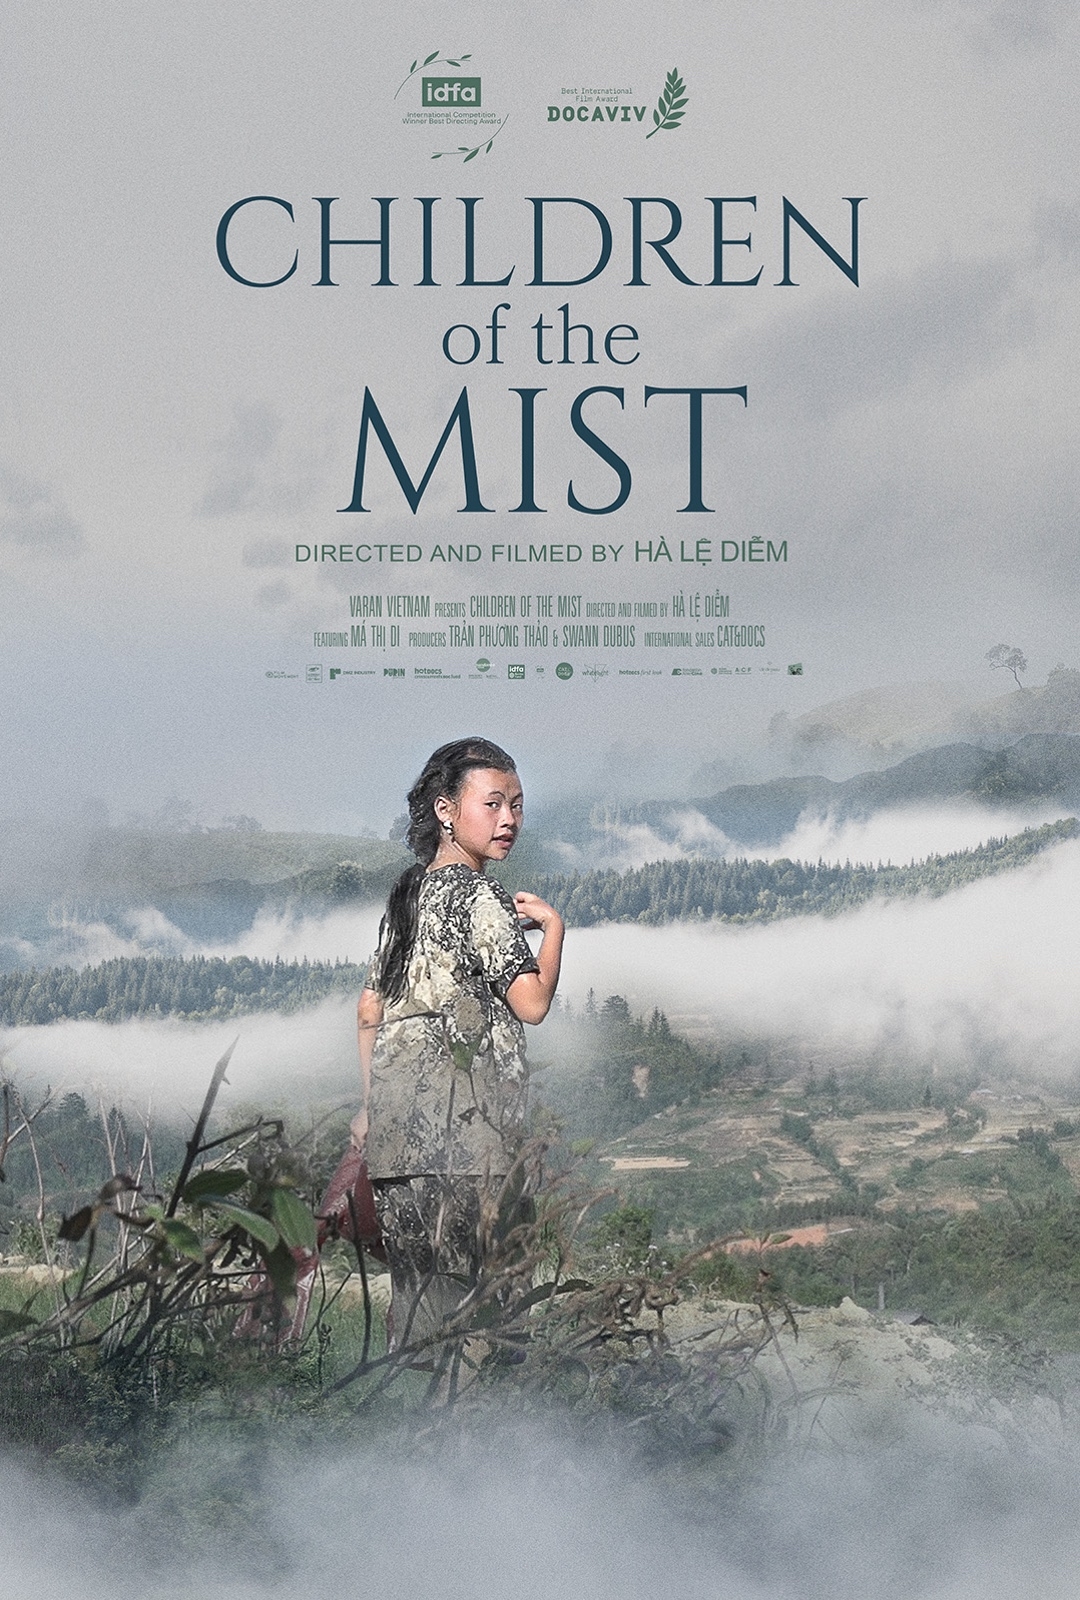 Poster phim "Những đứa trẻ trong sương"